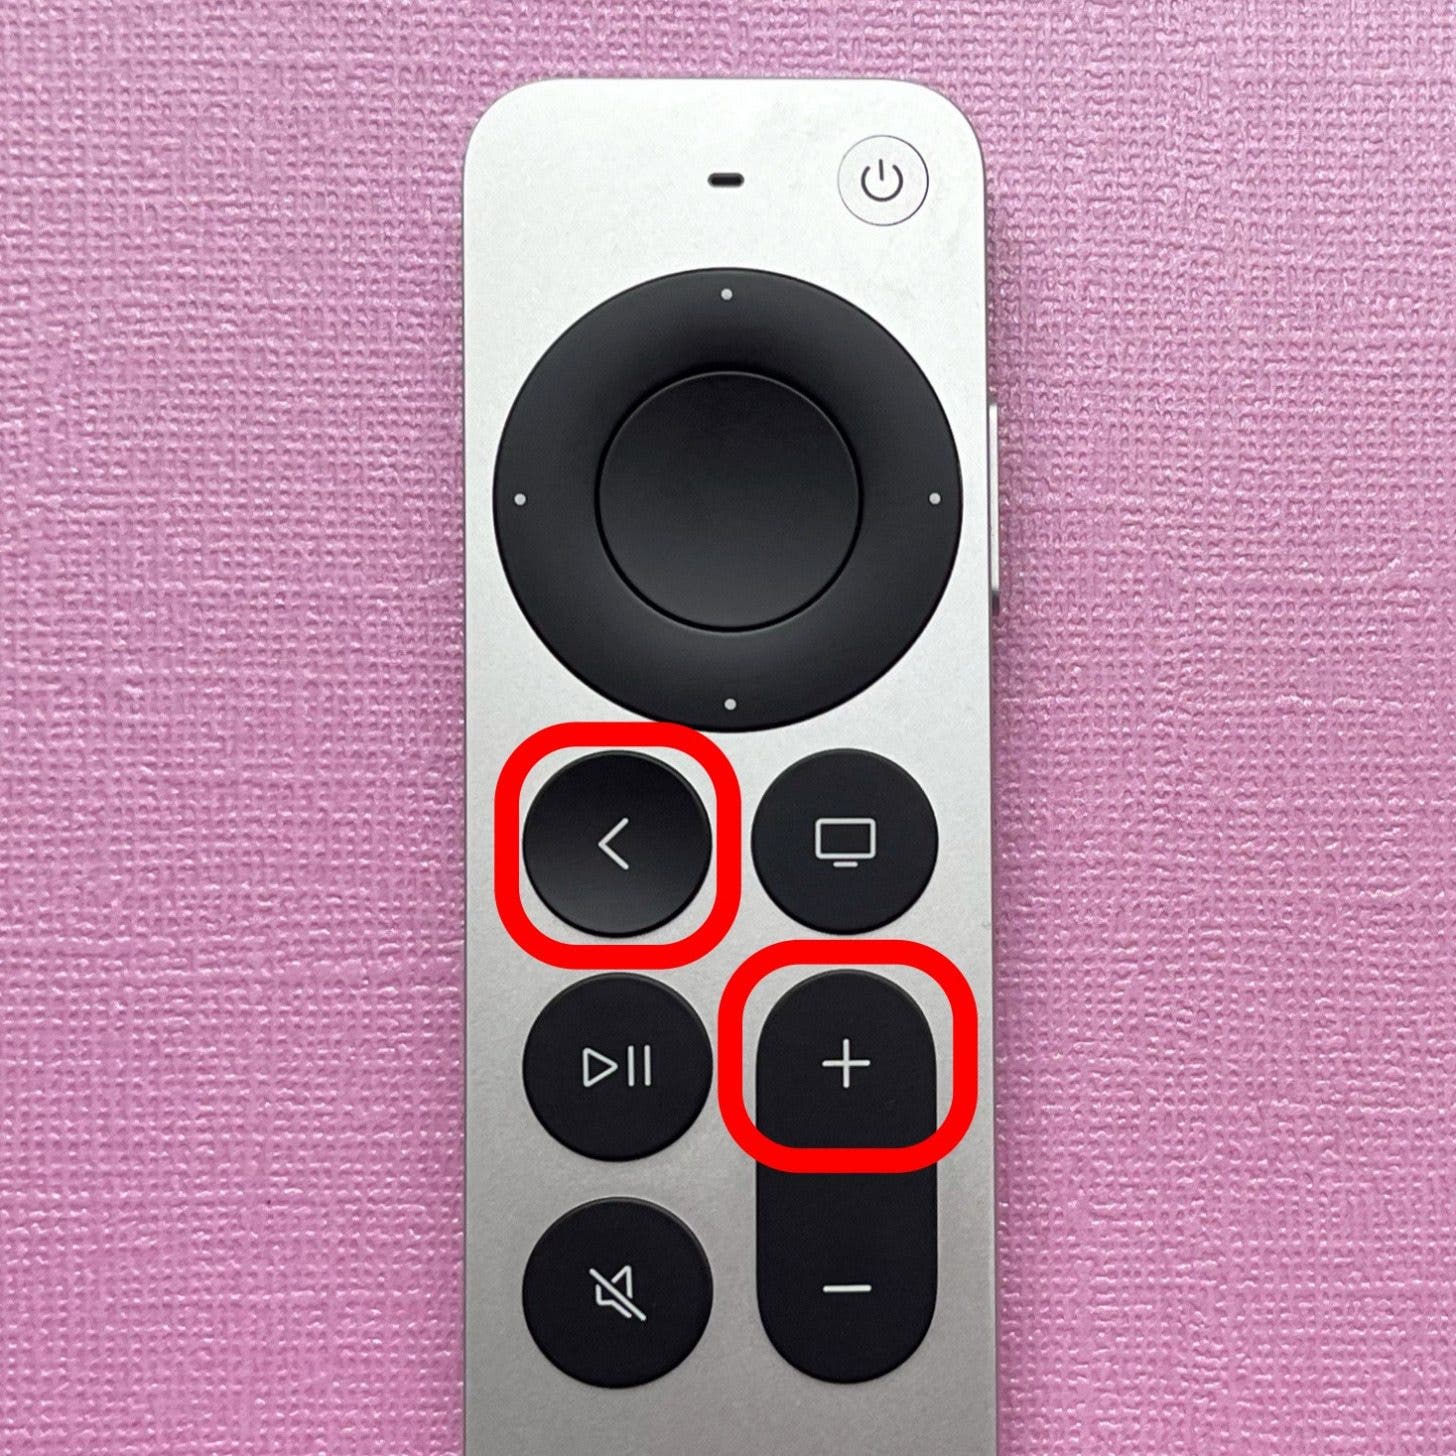 Mantenga presionados los botones Atrás y Subir volumen simultáneamente hasta que vea una ventana emergente en la pantalla de su Apple TV. 